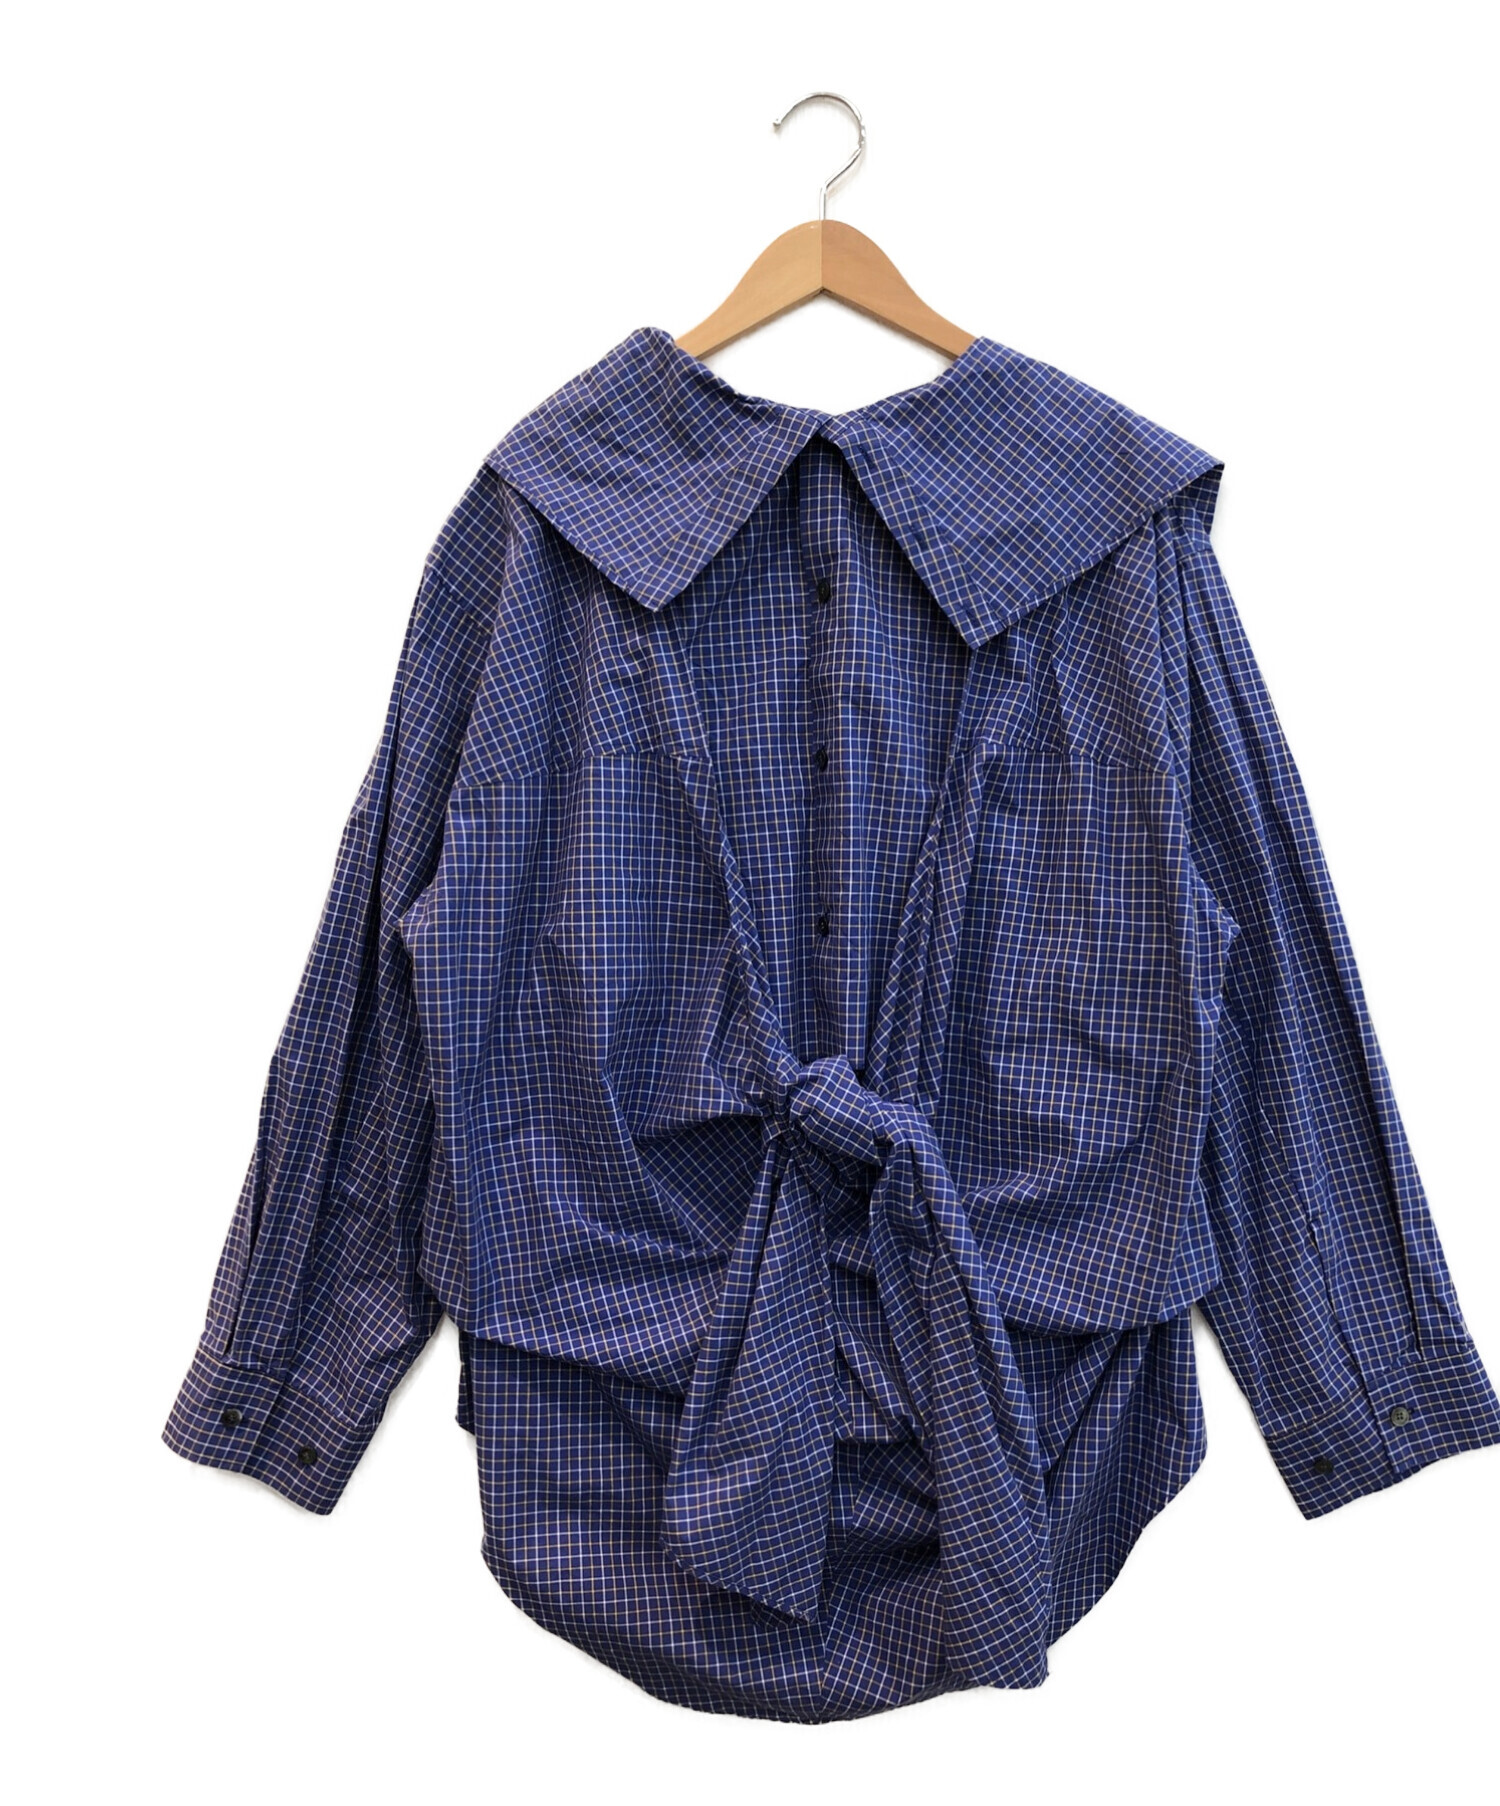 IRENE (アイレネ) チェックデザインプルオーバーシャツ ネイビー サイズ:36